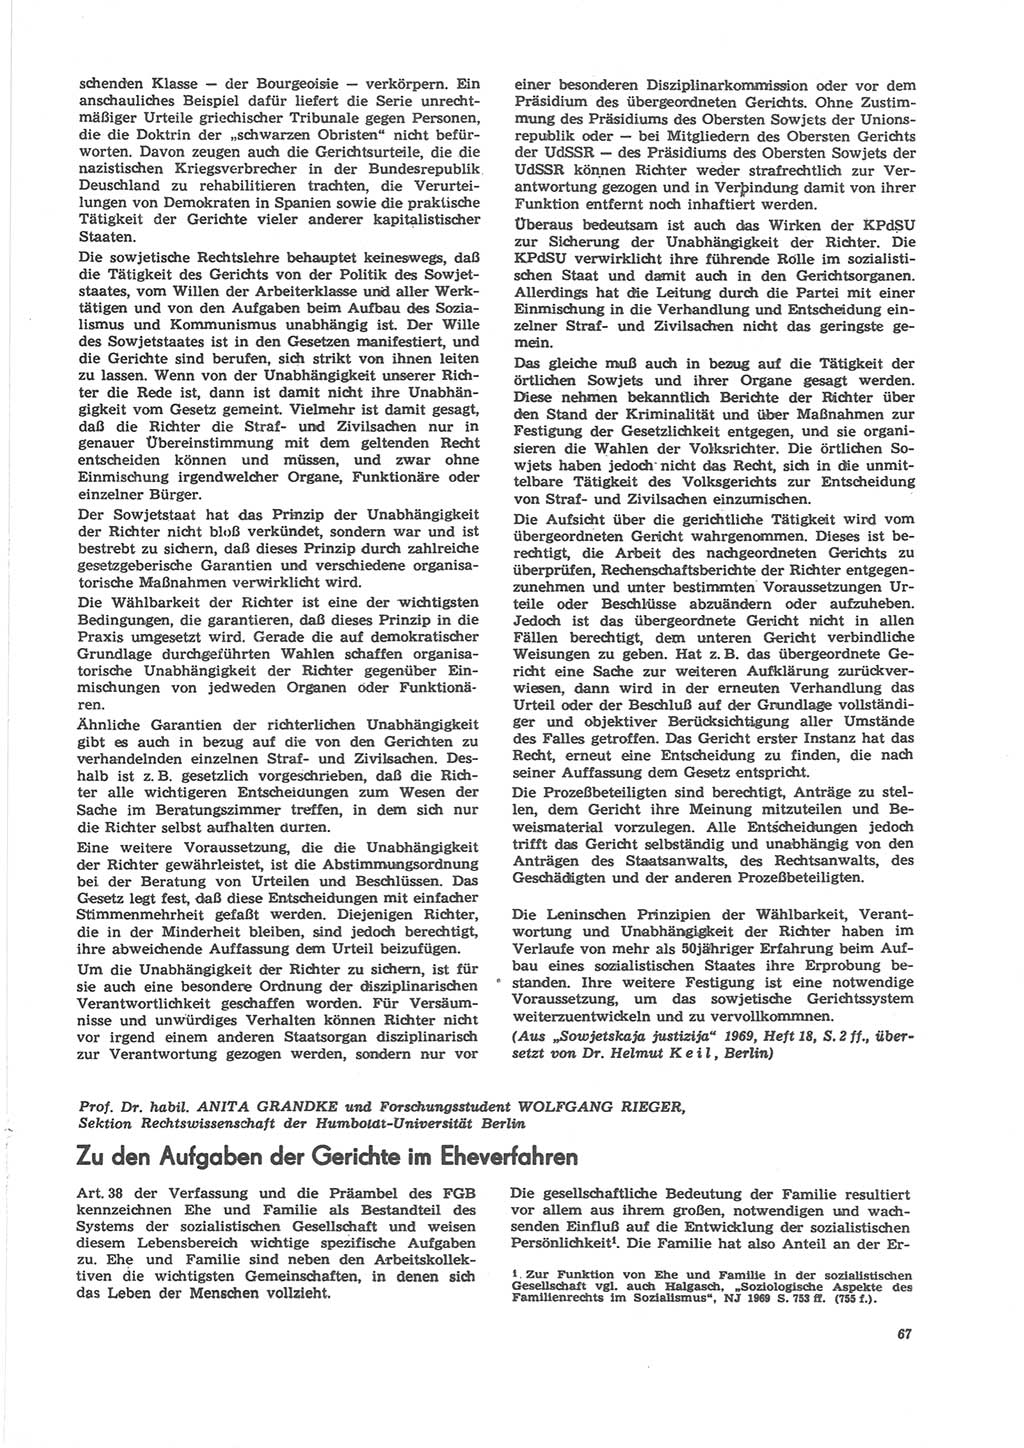 Neue Justiz (NJ), Zeitschrift für Recht und Rechtswissenschaft [Deutsche Demokratische Republik (DDR)], 24. Jahrgang 1970, Seite 67 (NJ DDR 1970, S. 67)